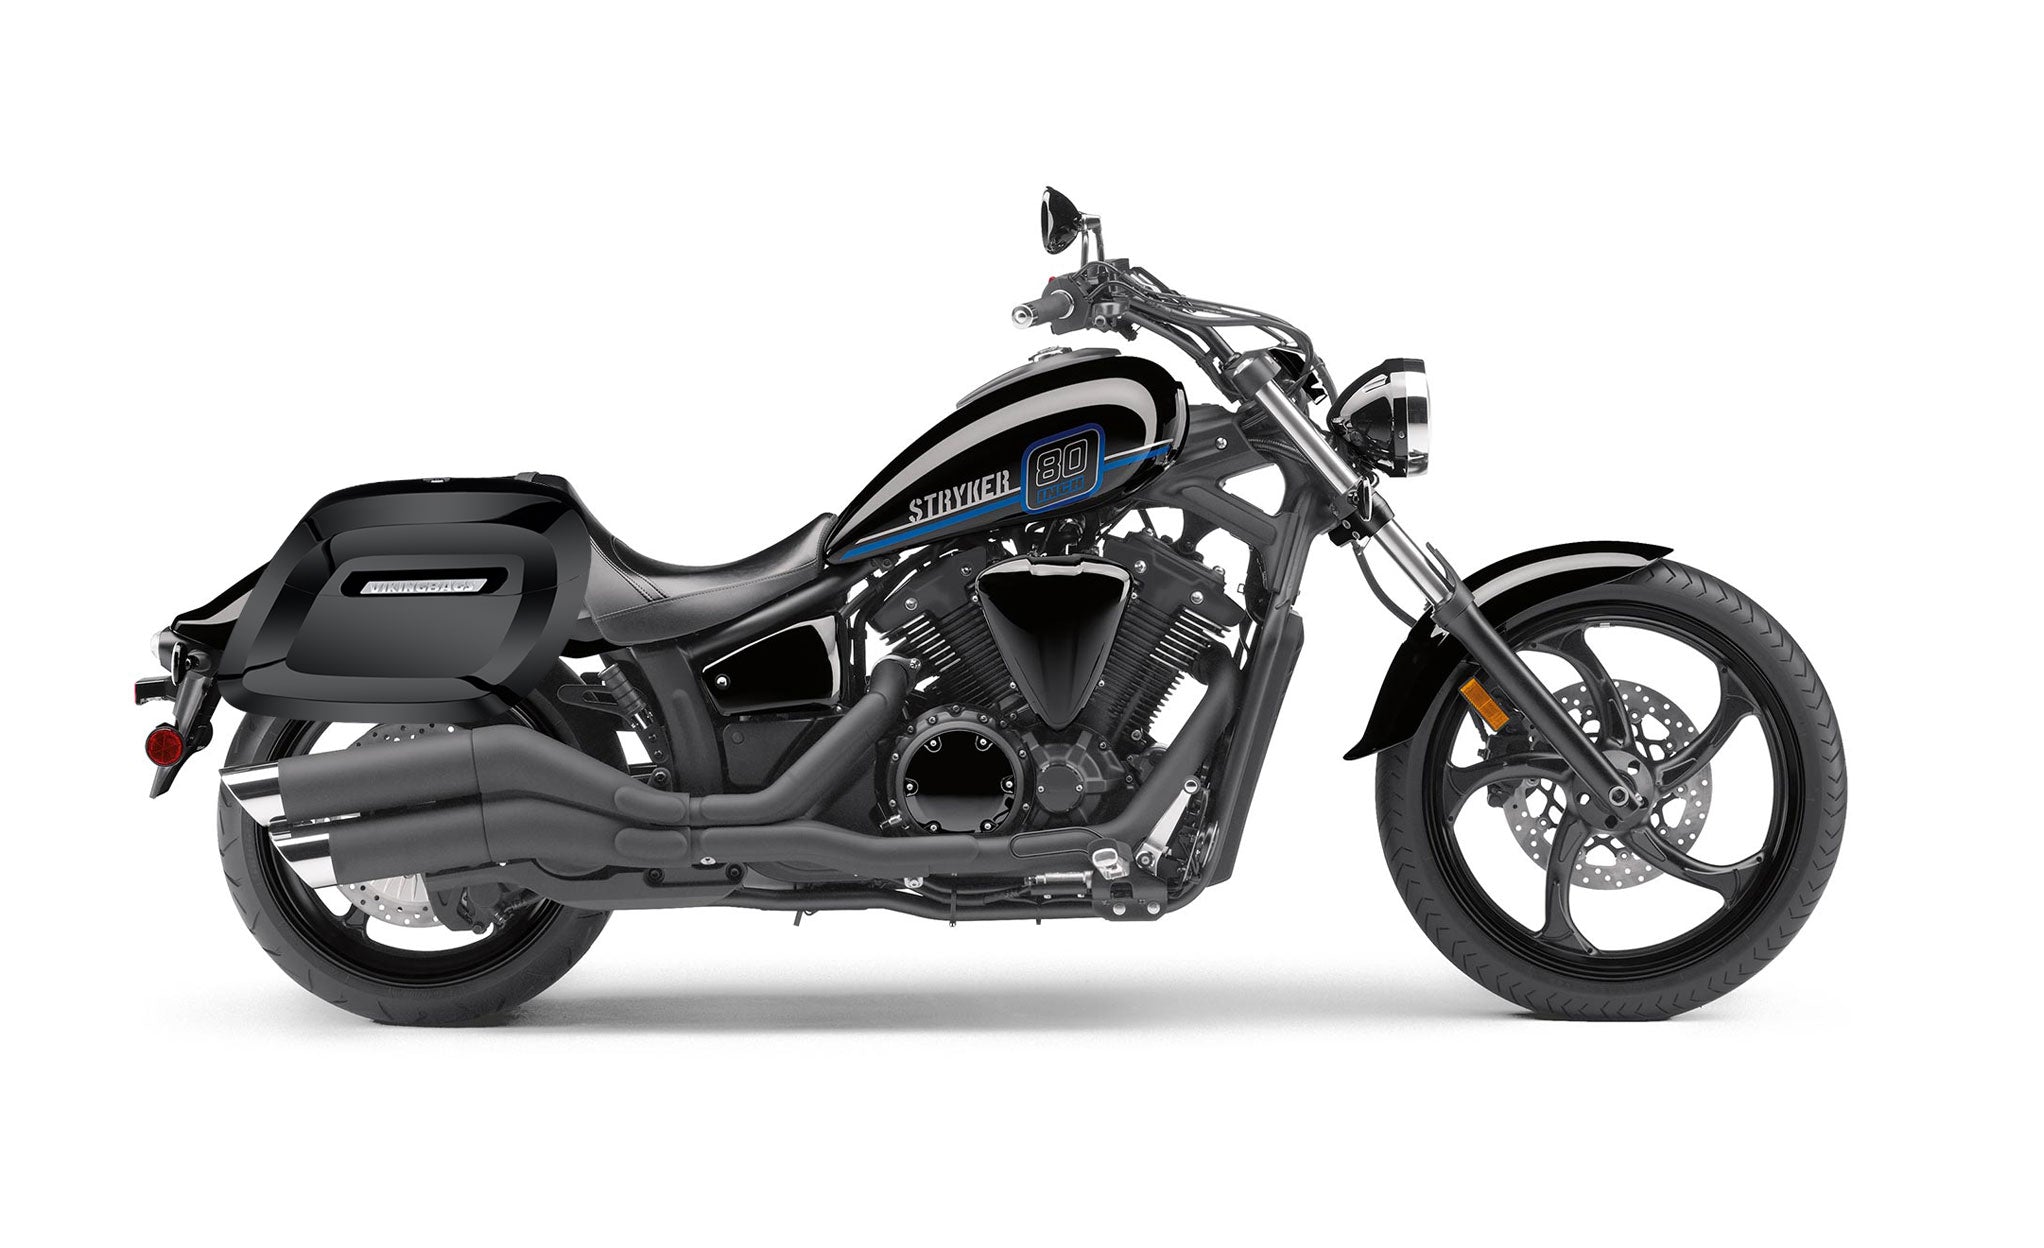 Viking Lamellar Raven Extra Large Yamaha Stryker Painted Motorcycle Hard Saddlebags on Bike Photo @expand